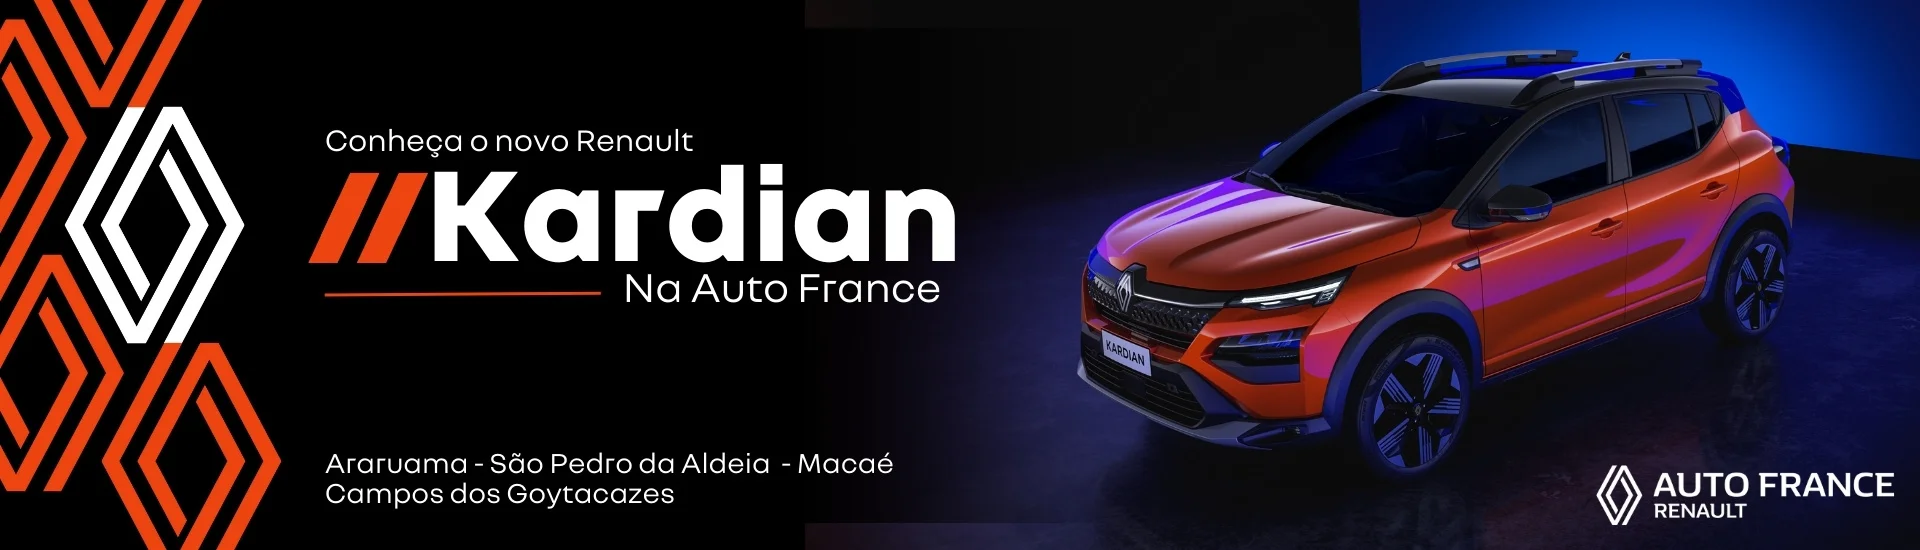 Conheça o Novo Kardian na Auto France